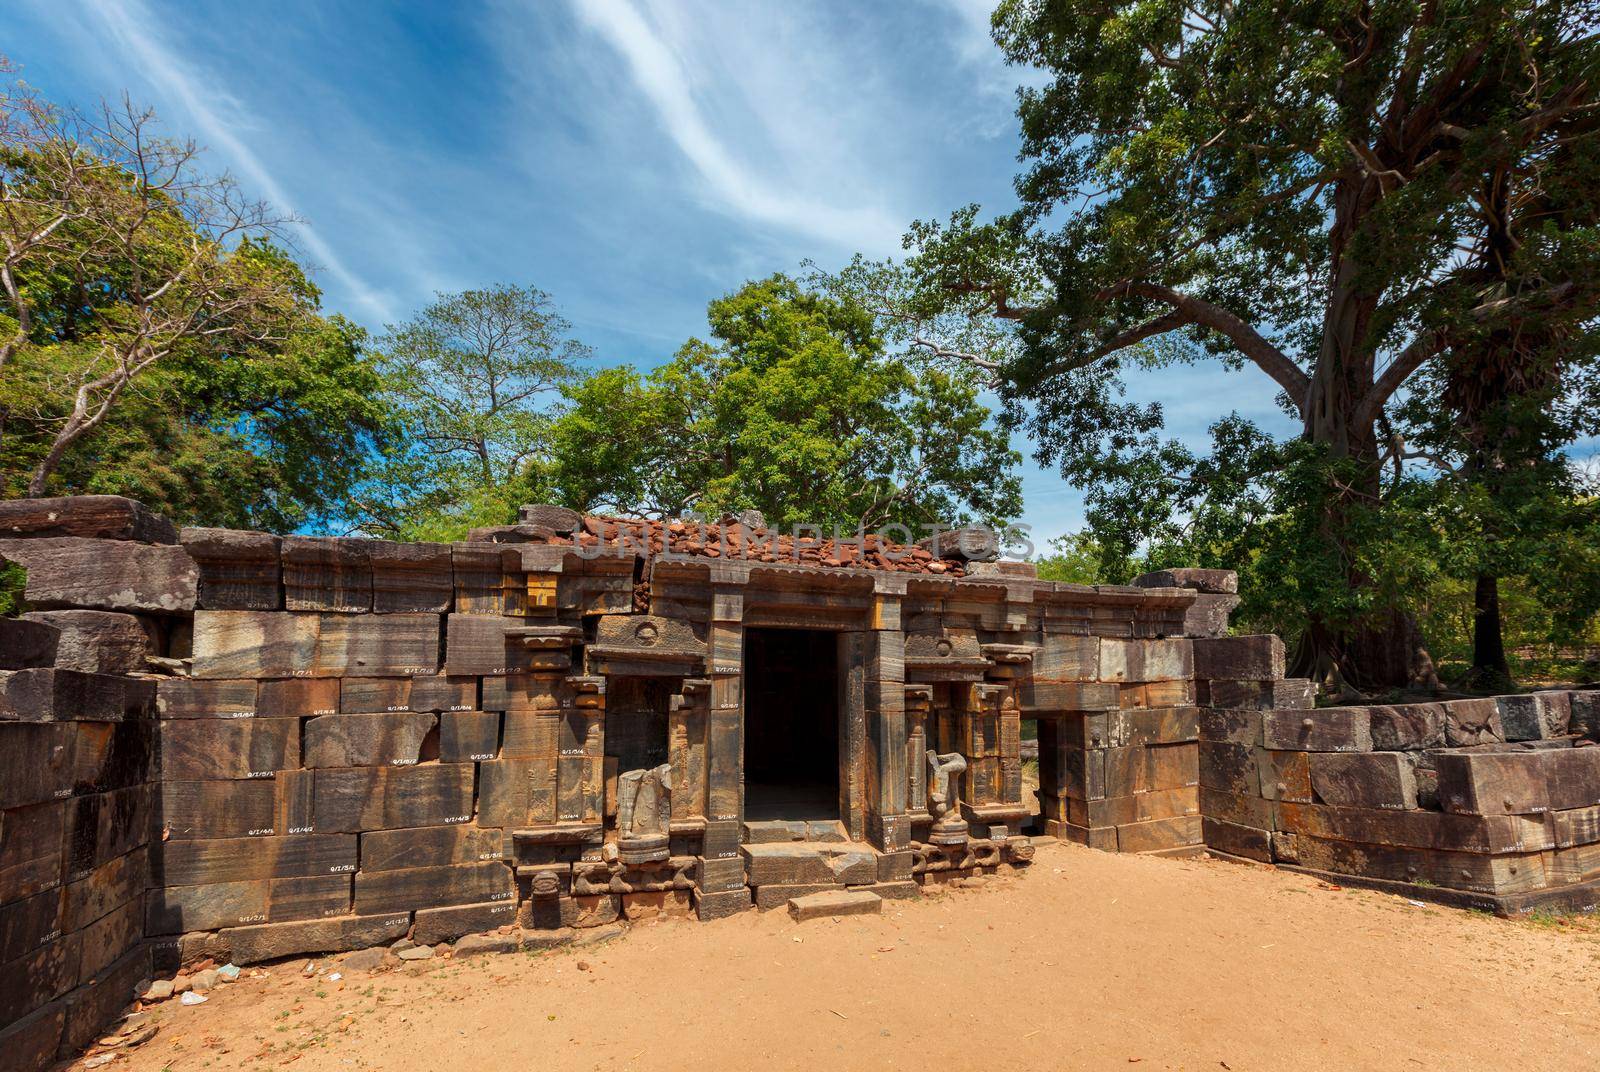 Shiva devale Shiva shrine temple ruins in ancient city Pollonaruwa - famous tourist destination and archaelogical site, Sri Lanka